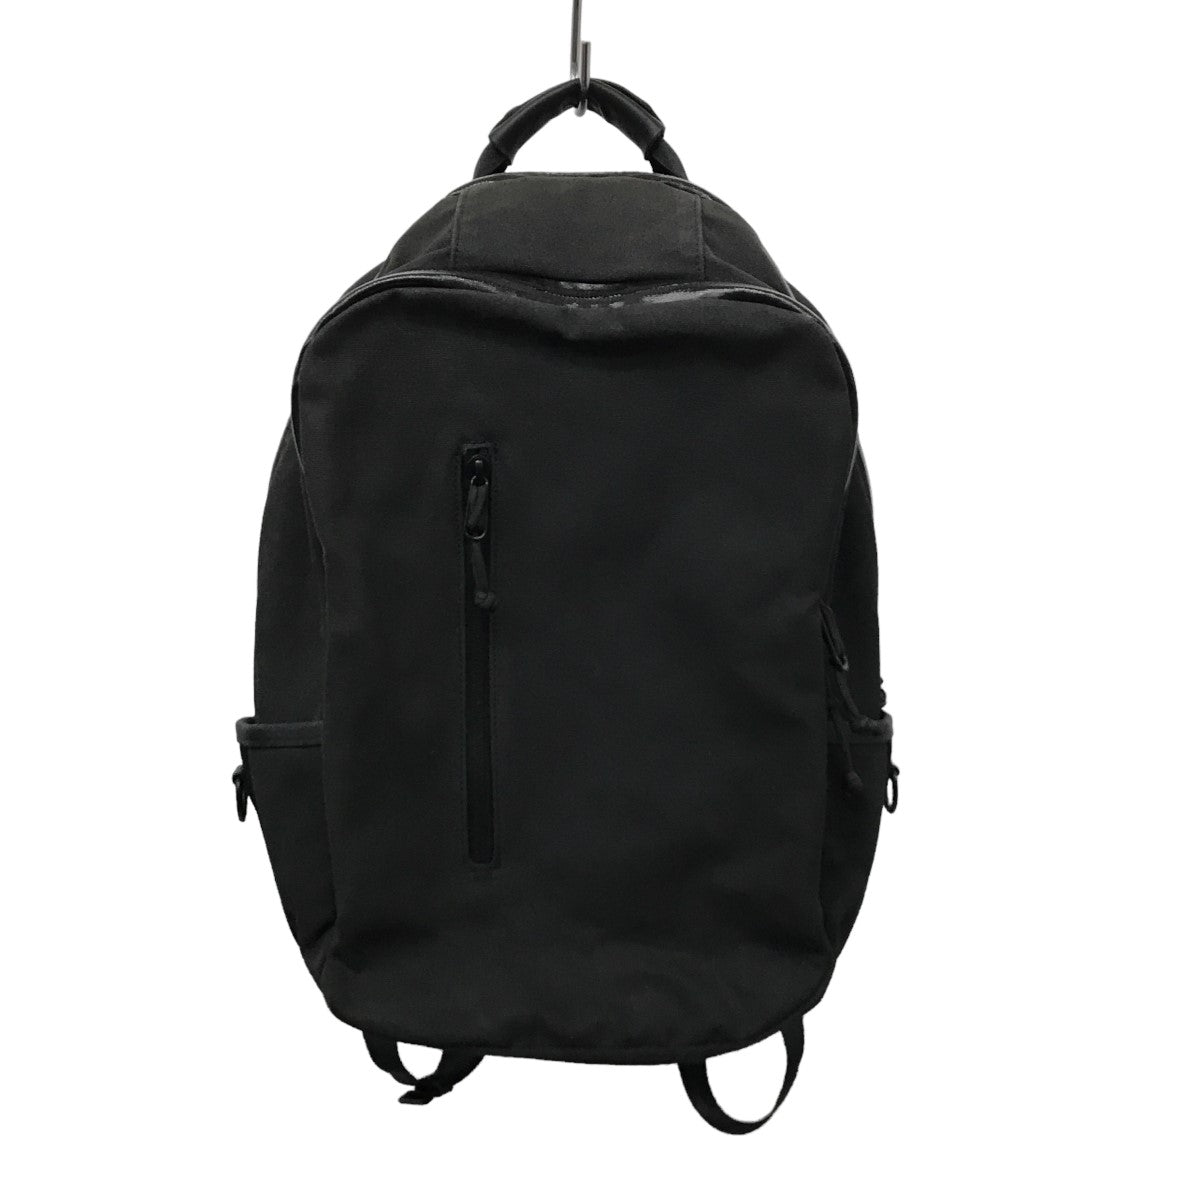 12,250円DEFY BAGS Bucktown Backpack